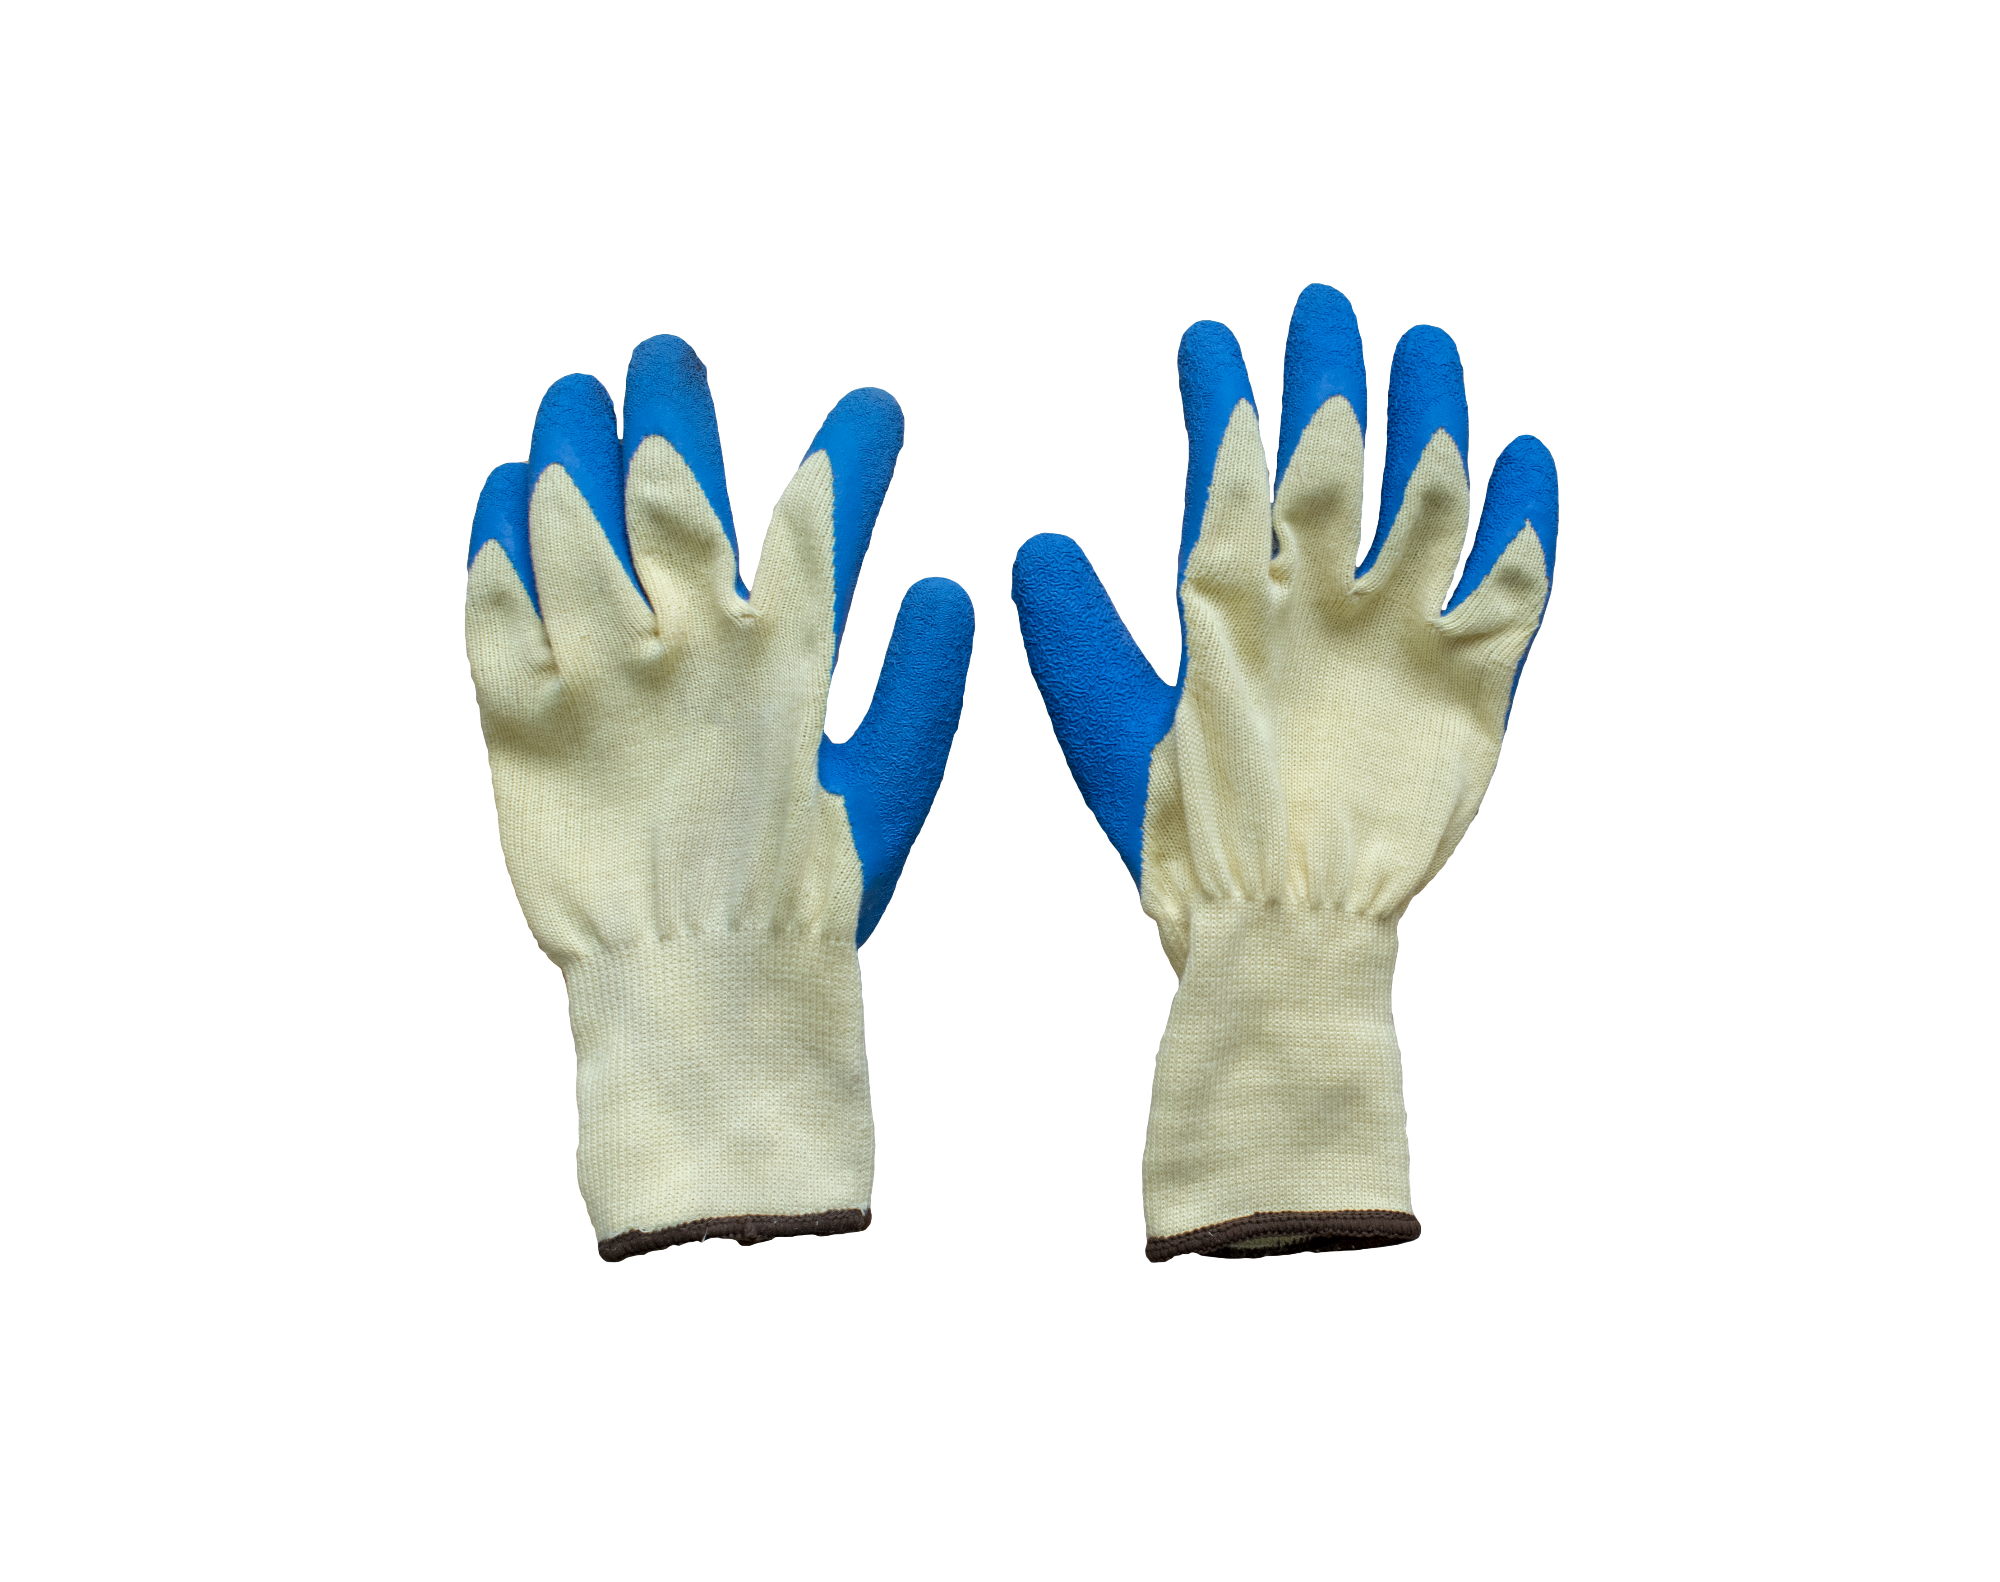 Rešitev za lepe roke so delovne rokavice